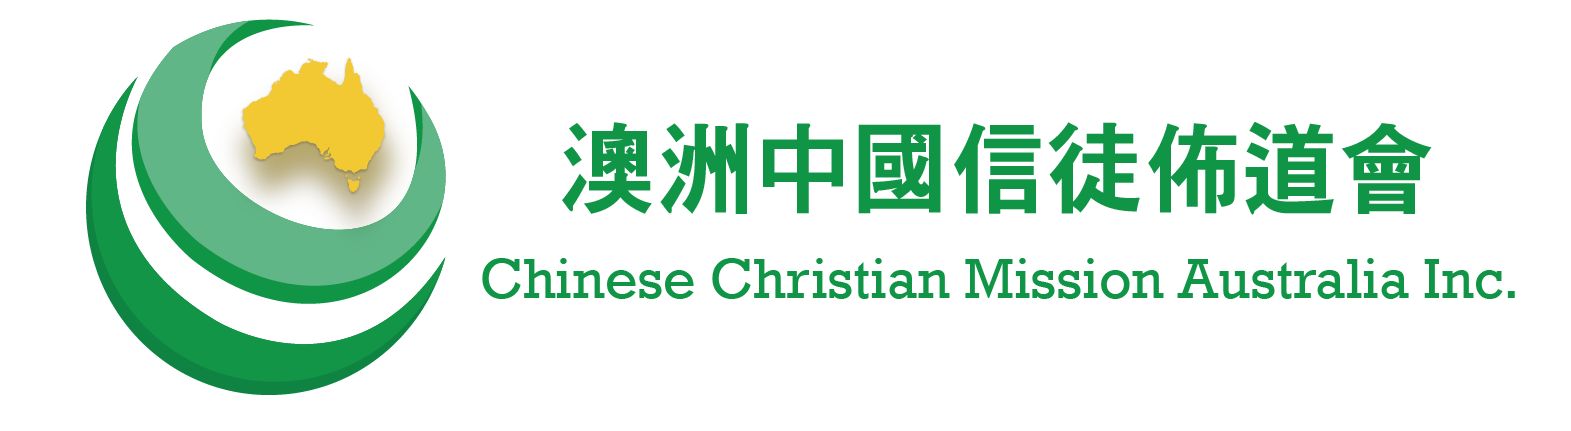 澳洲中信 Chinese Christian Mission Australia Inc.